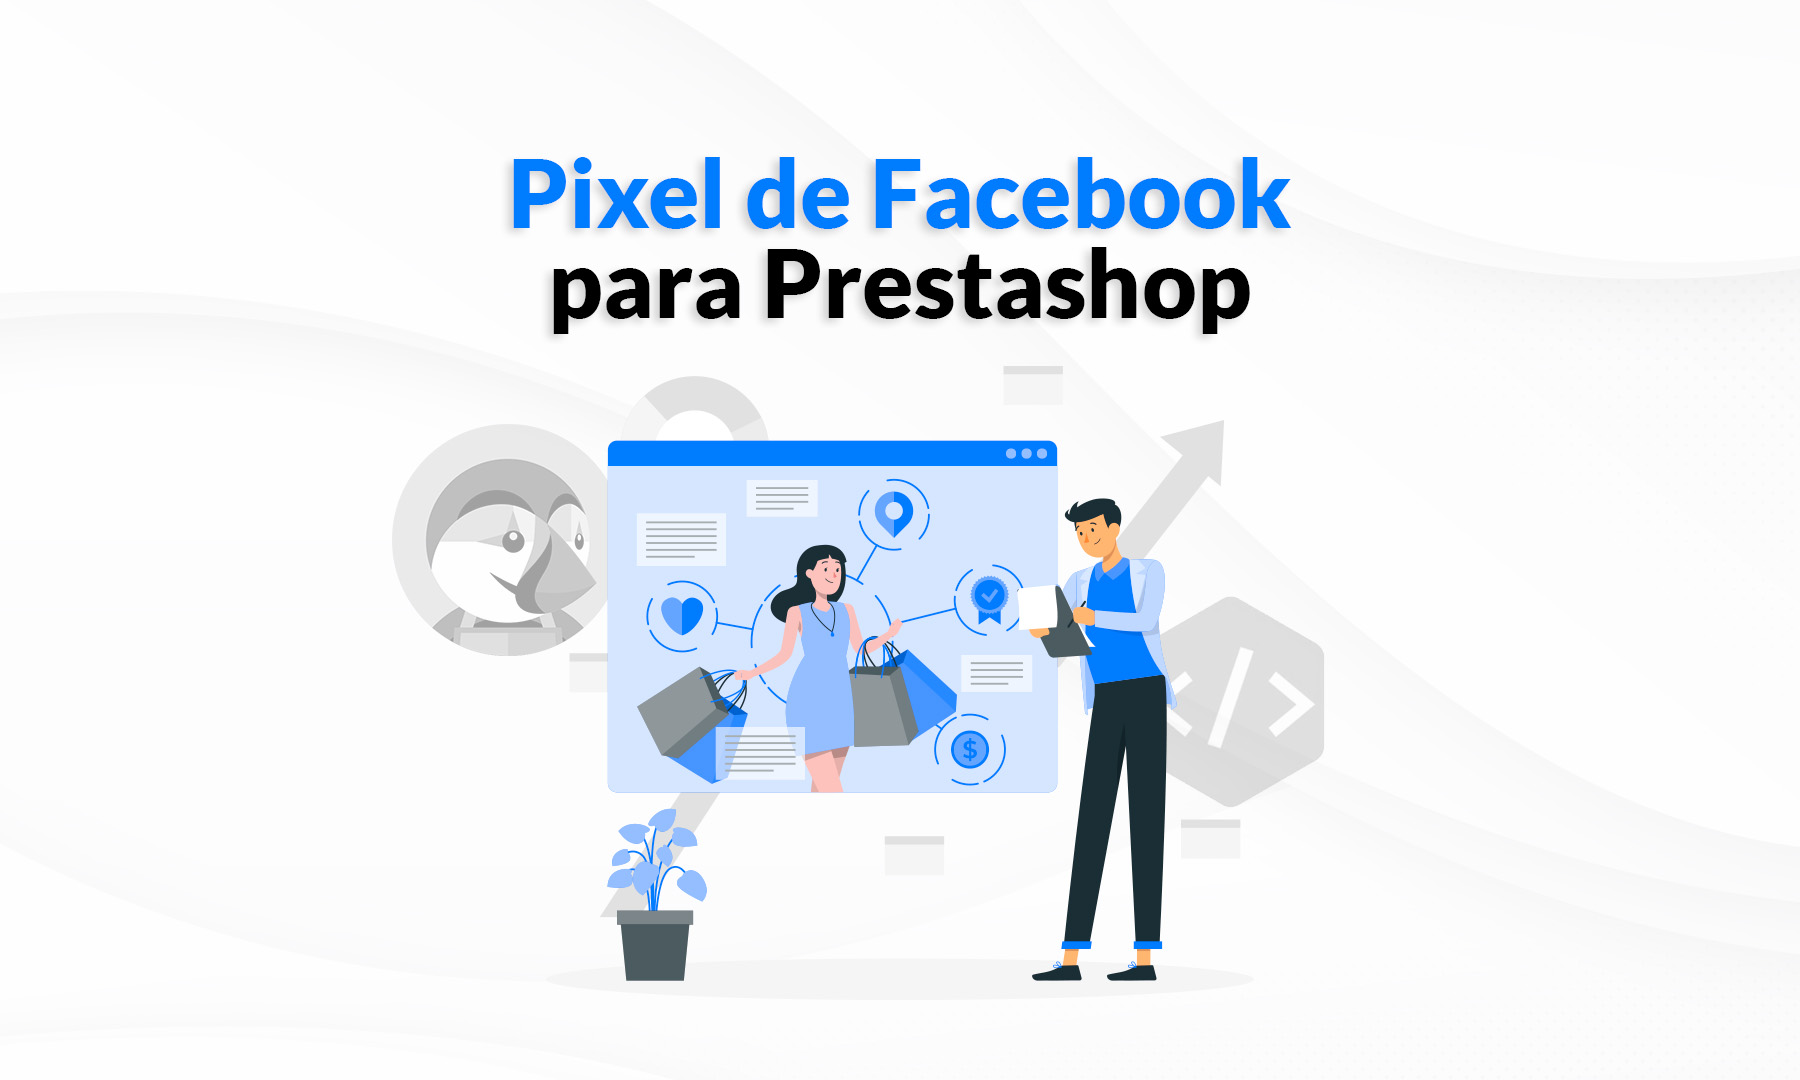 Módulo de Prestashop para el Píxel de Facebook